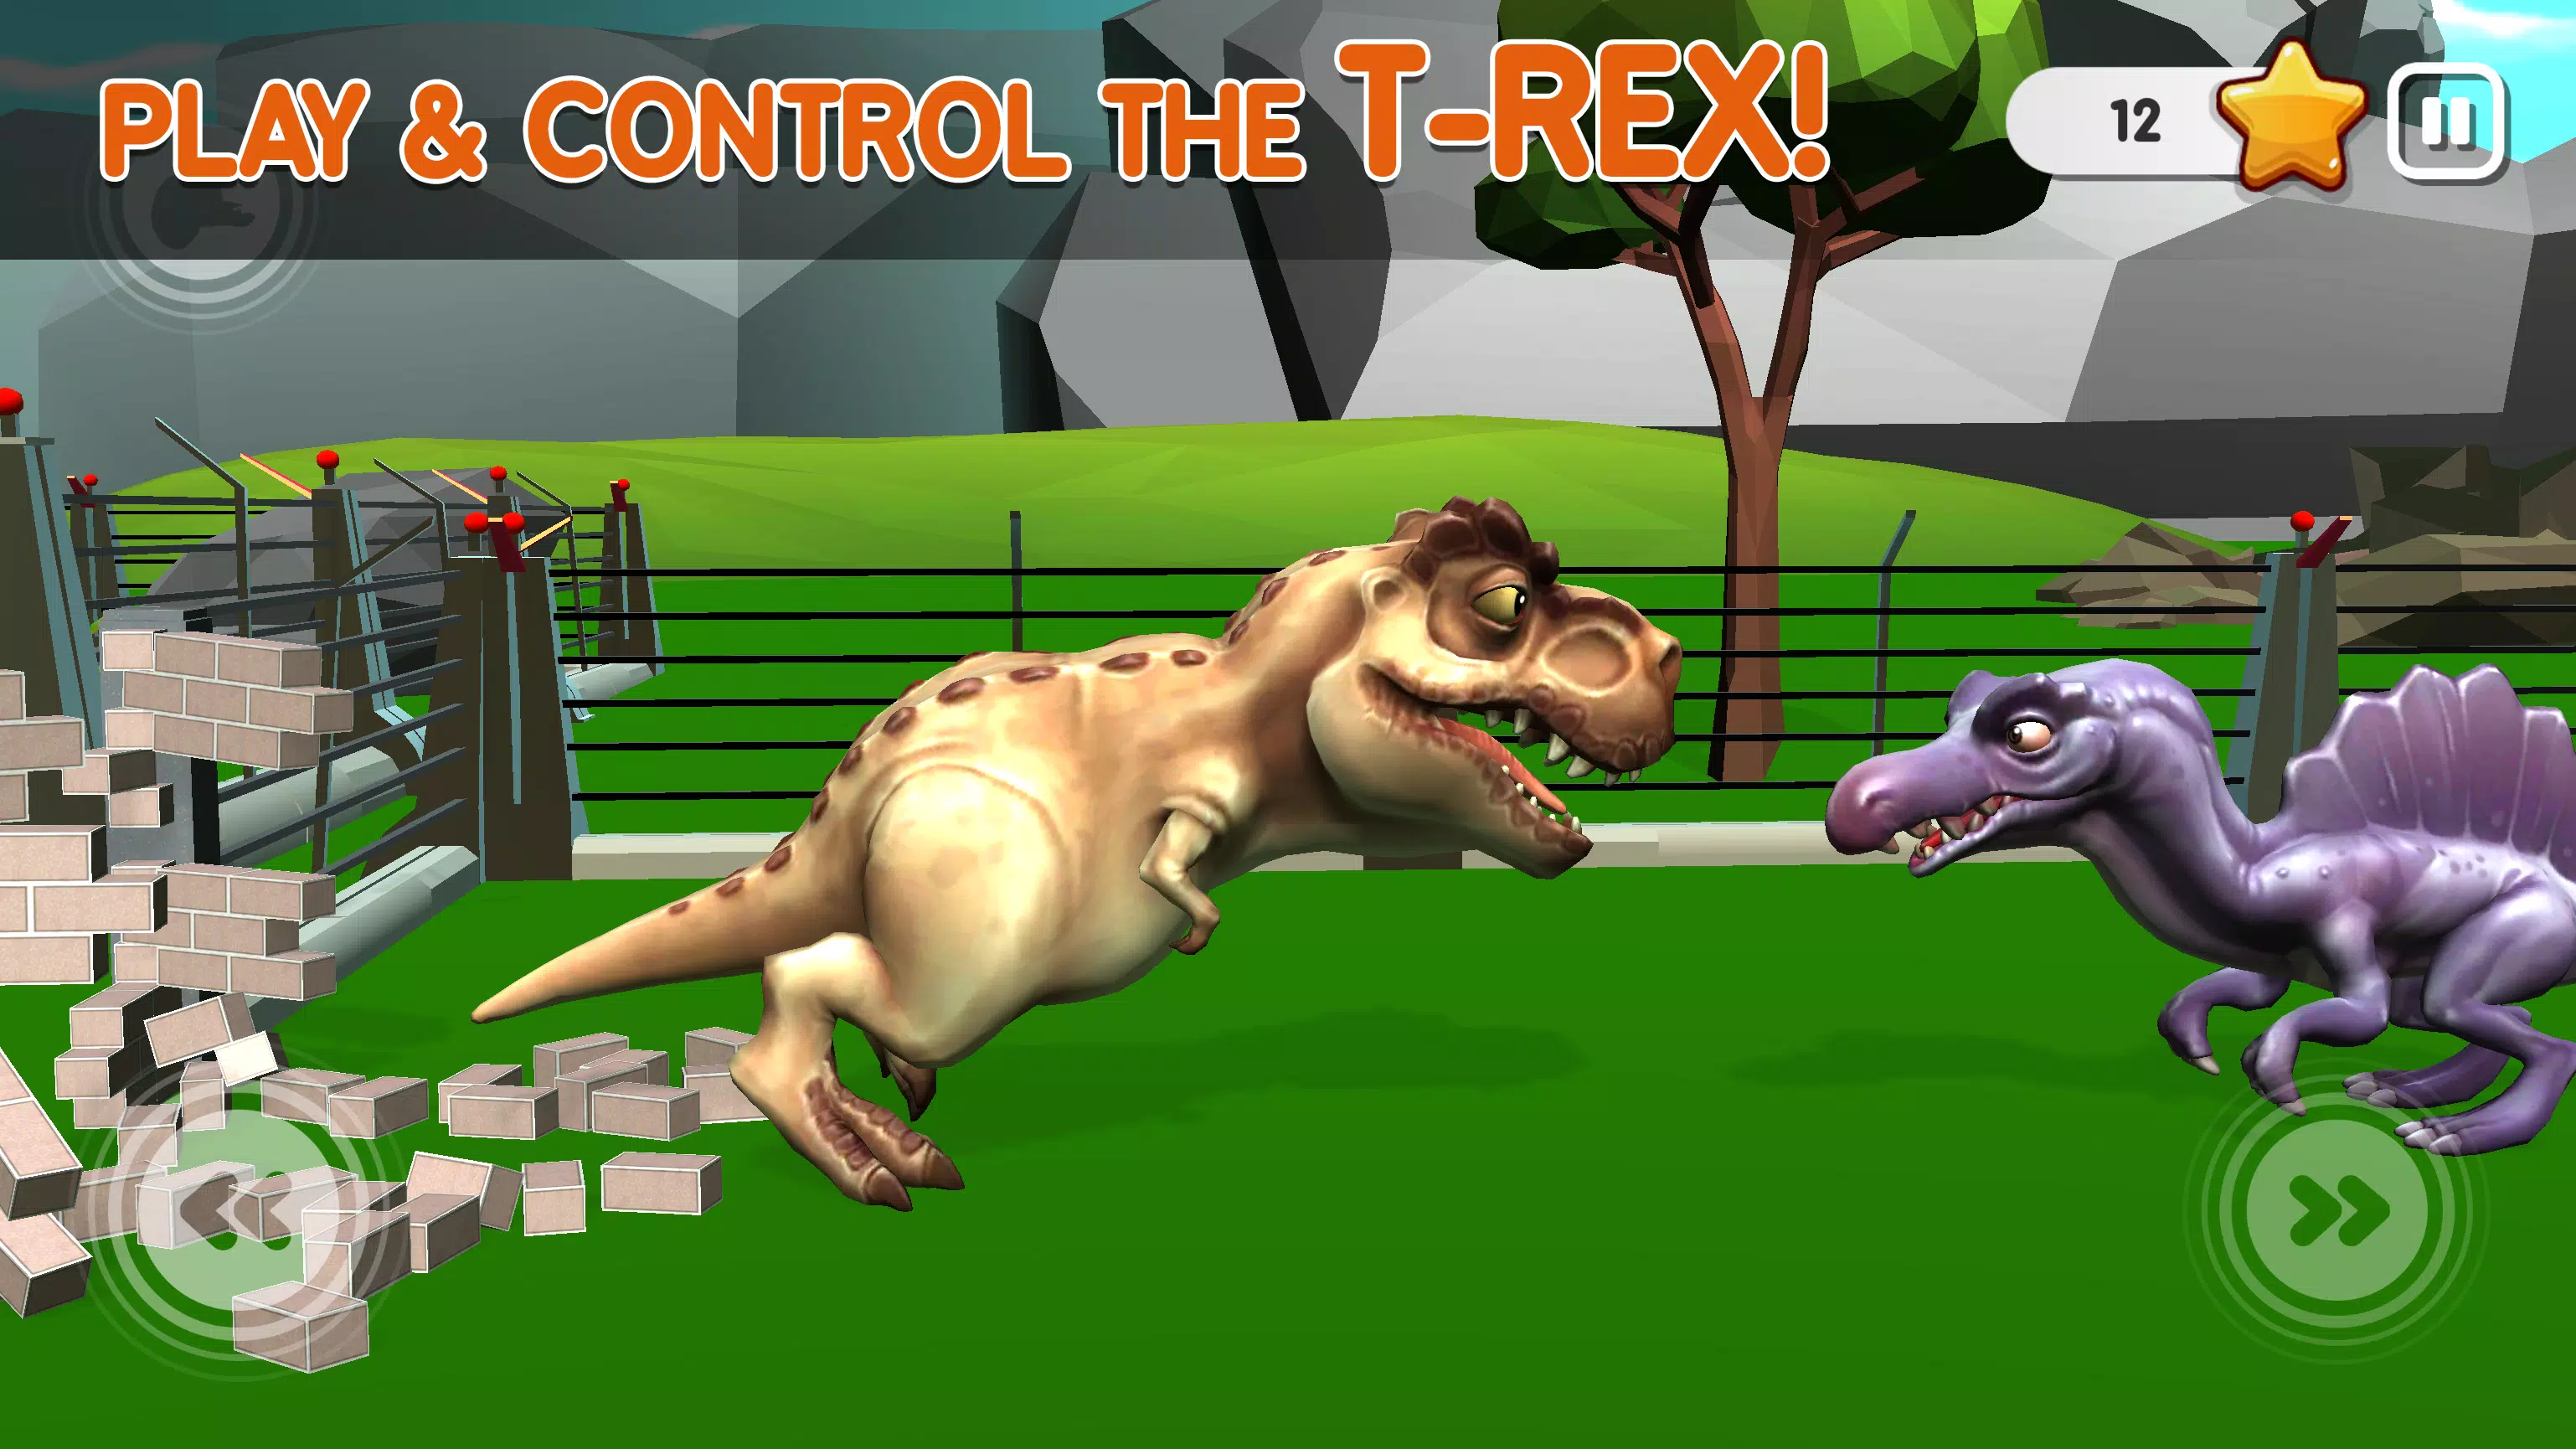 Fuga dos dinossauros jogo, parque dos dinossauros, dinosaur park kids game,  vídeo de dinossauros 3d 